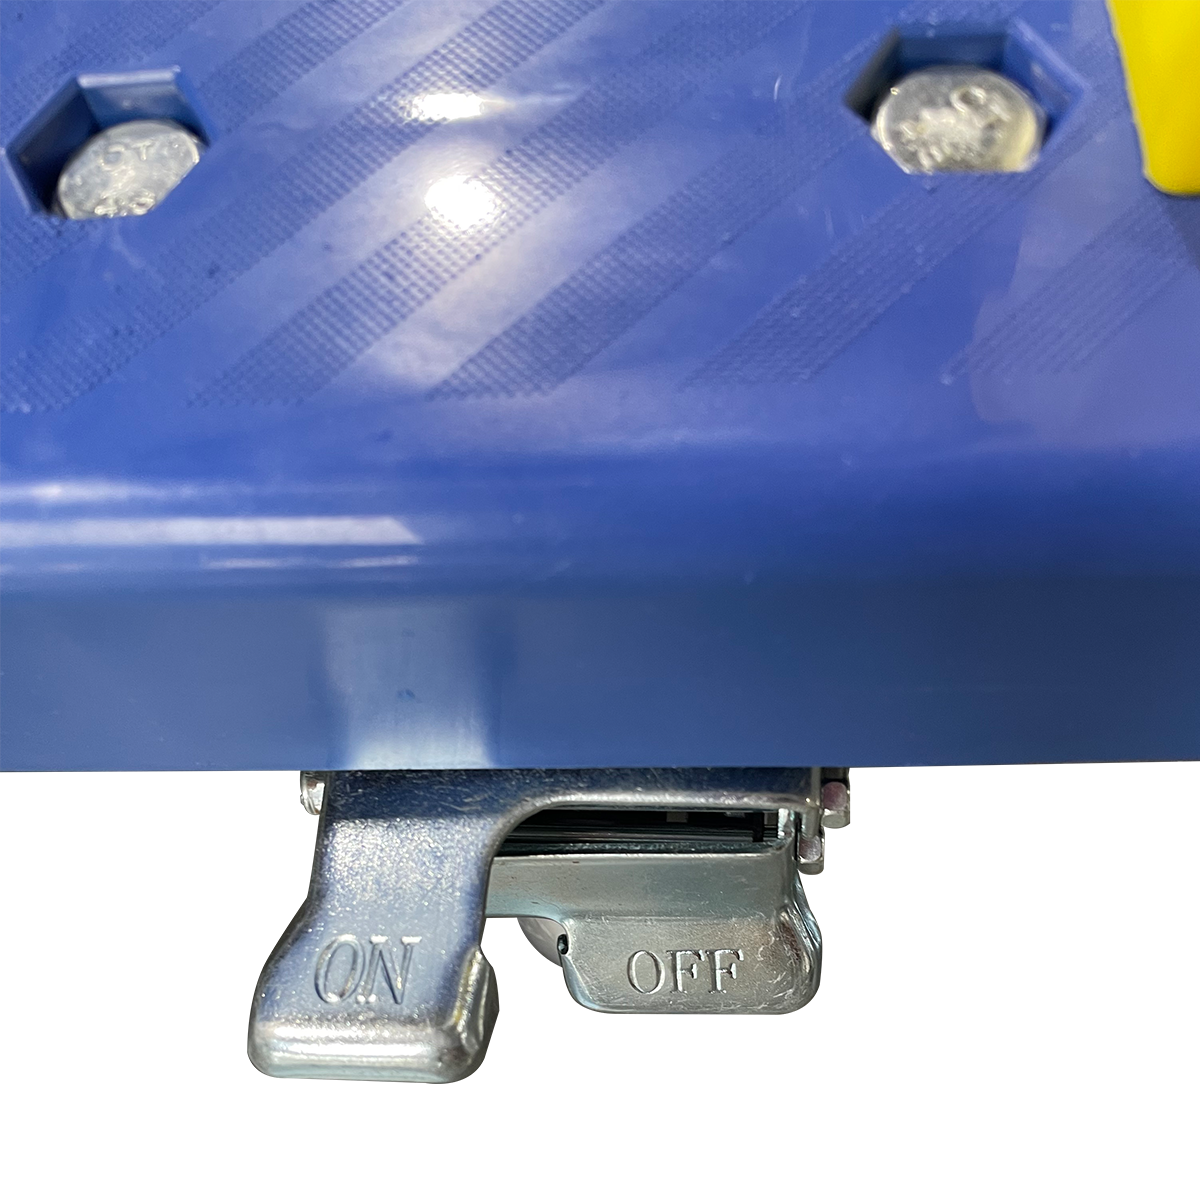 รถเข็นพื้นพลาสติก COMBI WARE แบบพับด้ามจับได้ ล้อสามารถล็อคได้ รับน้ำหนักสูงสุดได้ถึง 400 kg. สีน้ำเงิน